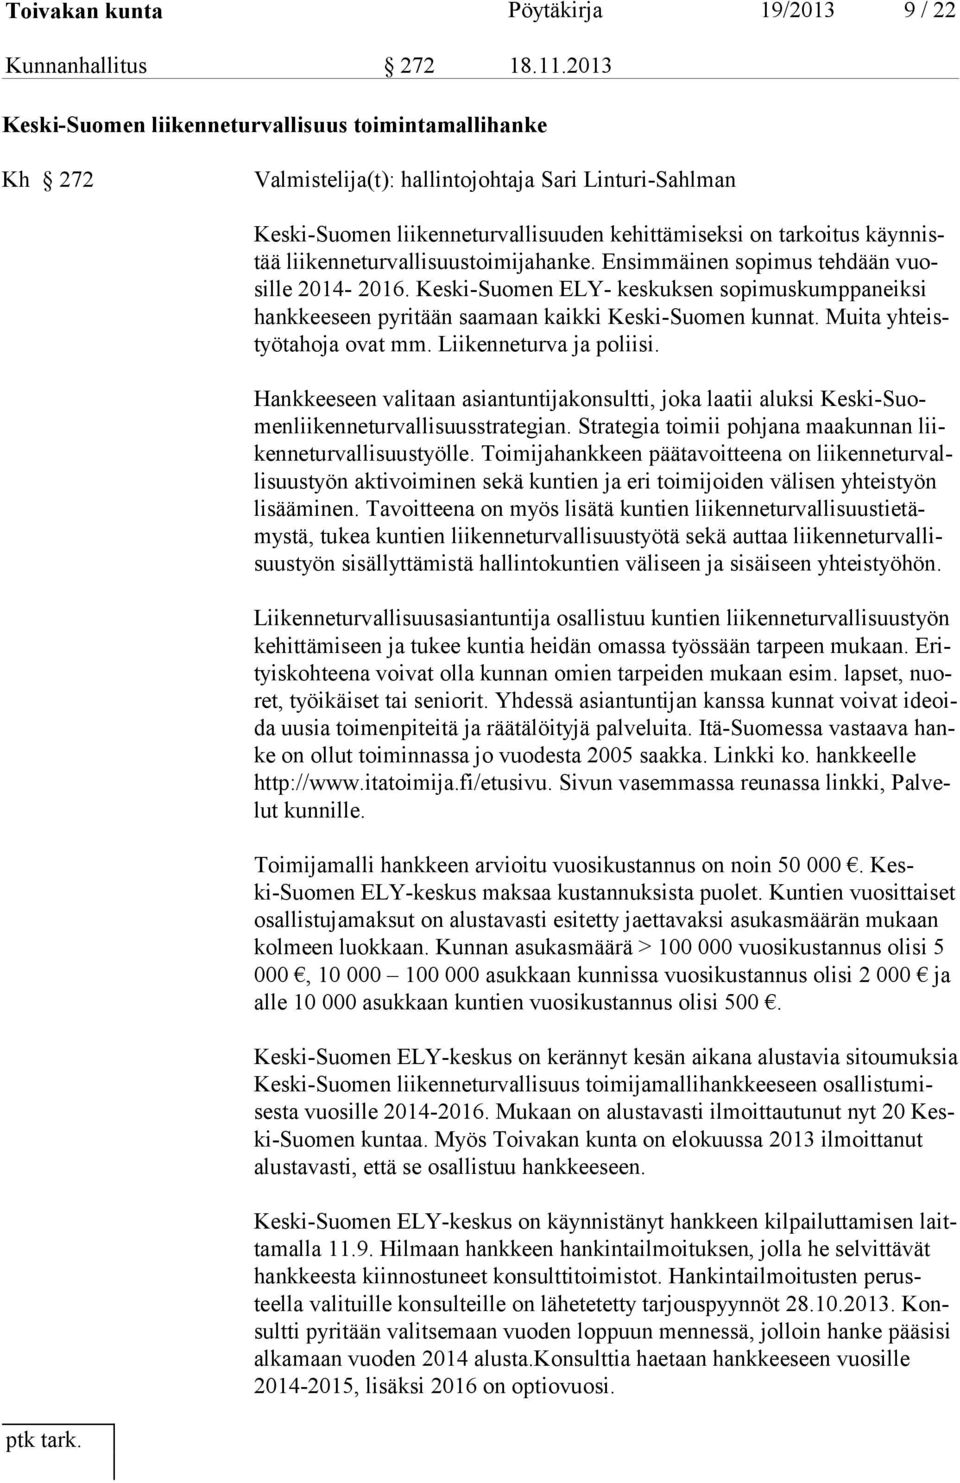 liikenneturvallisuustoimijahanke. Ensimmäinen sopimus tehdään vuosil le 2014-2016. Keski-Suomen ELY- keskuksen sopimuskumppaneiksi hankkeeseen pyritään saamaan kaikki Keski-Suomen kunnat.